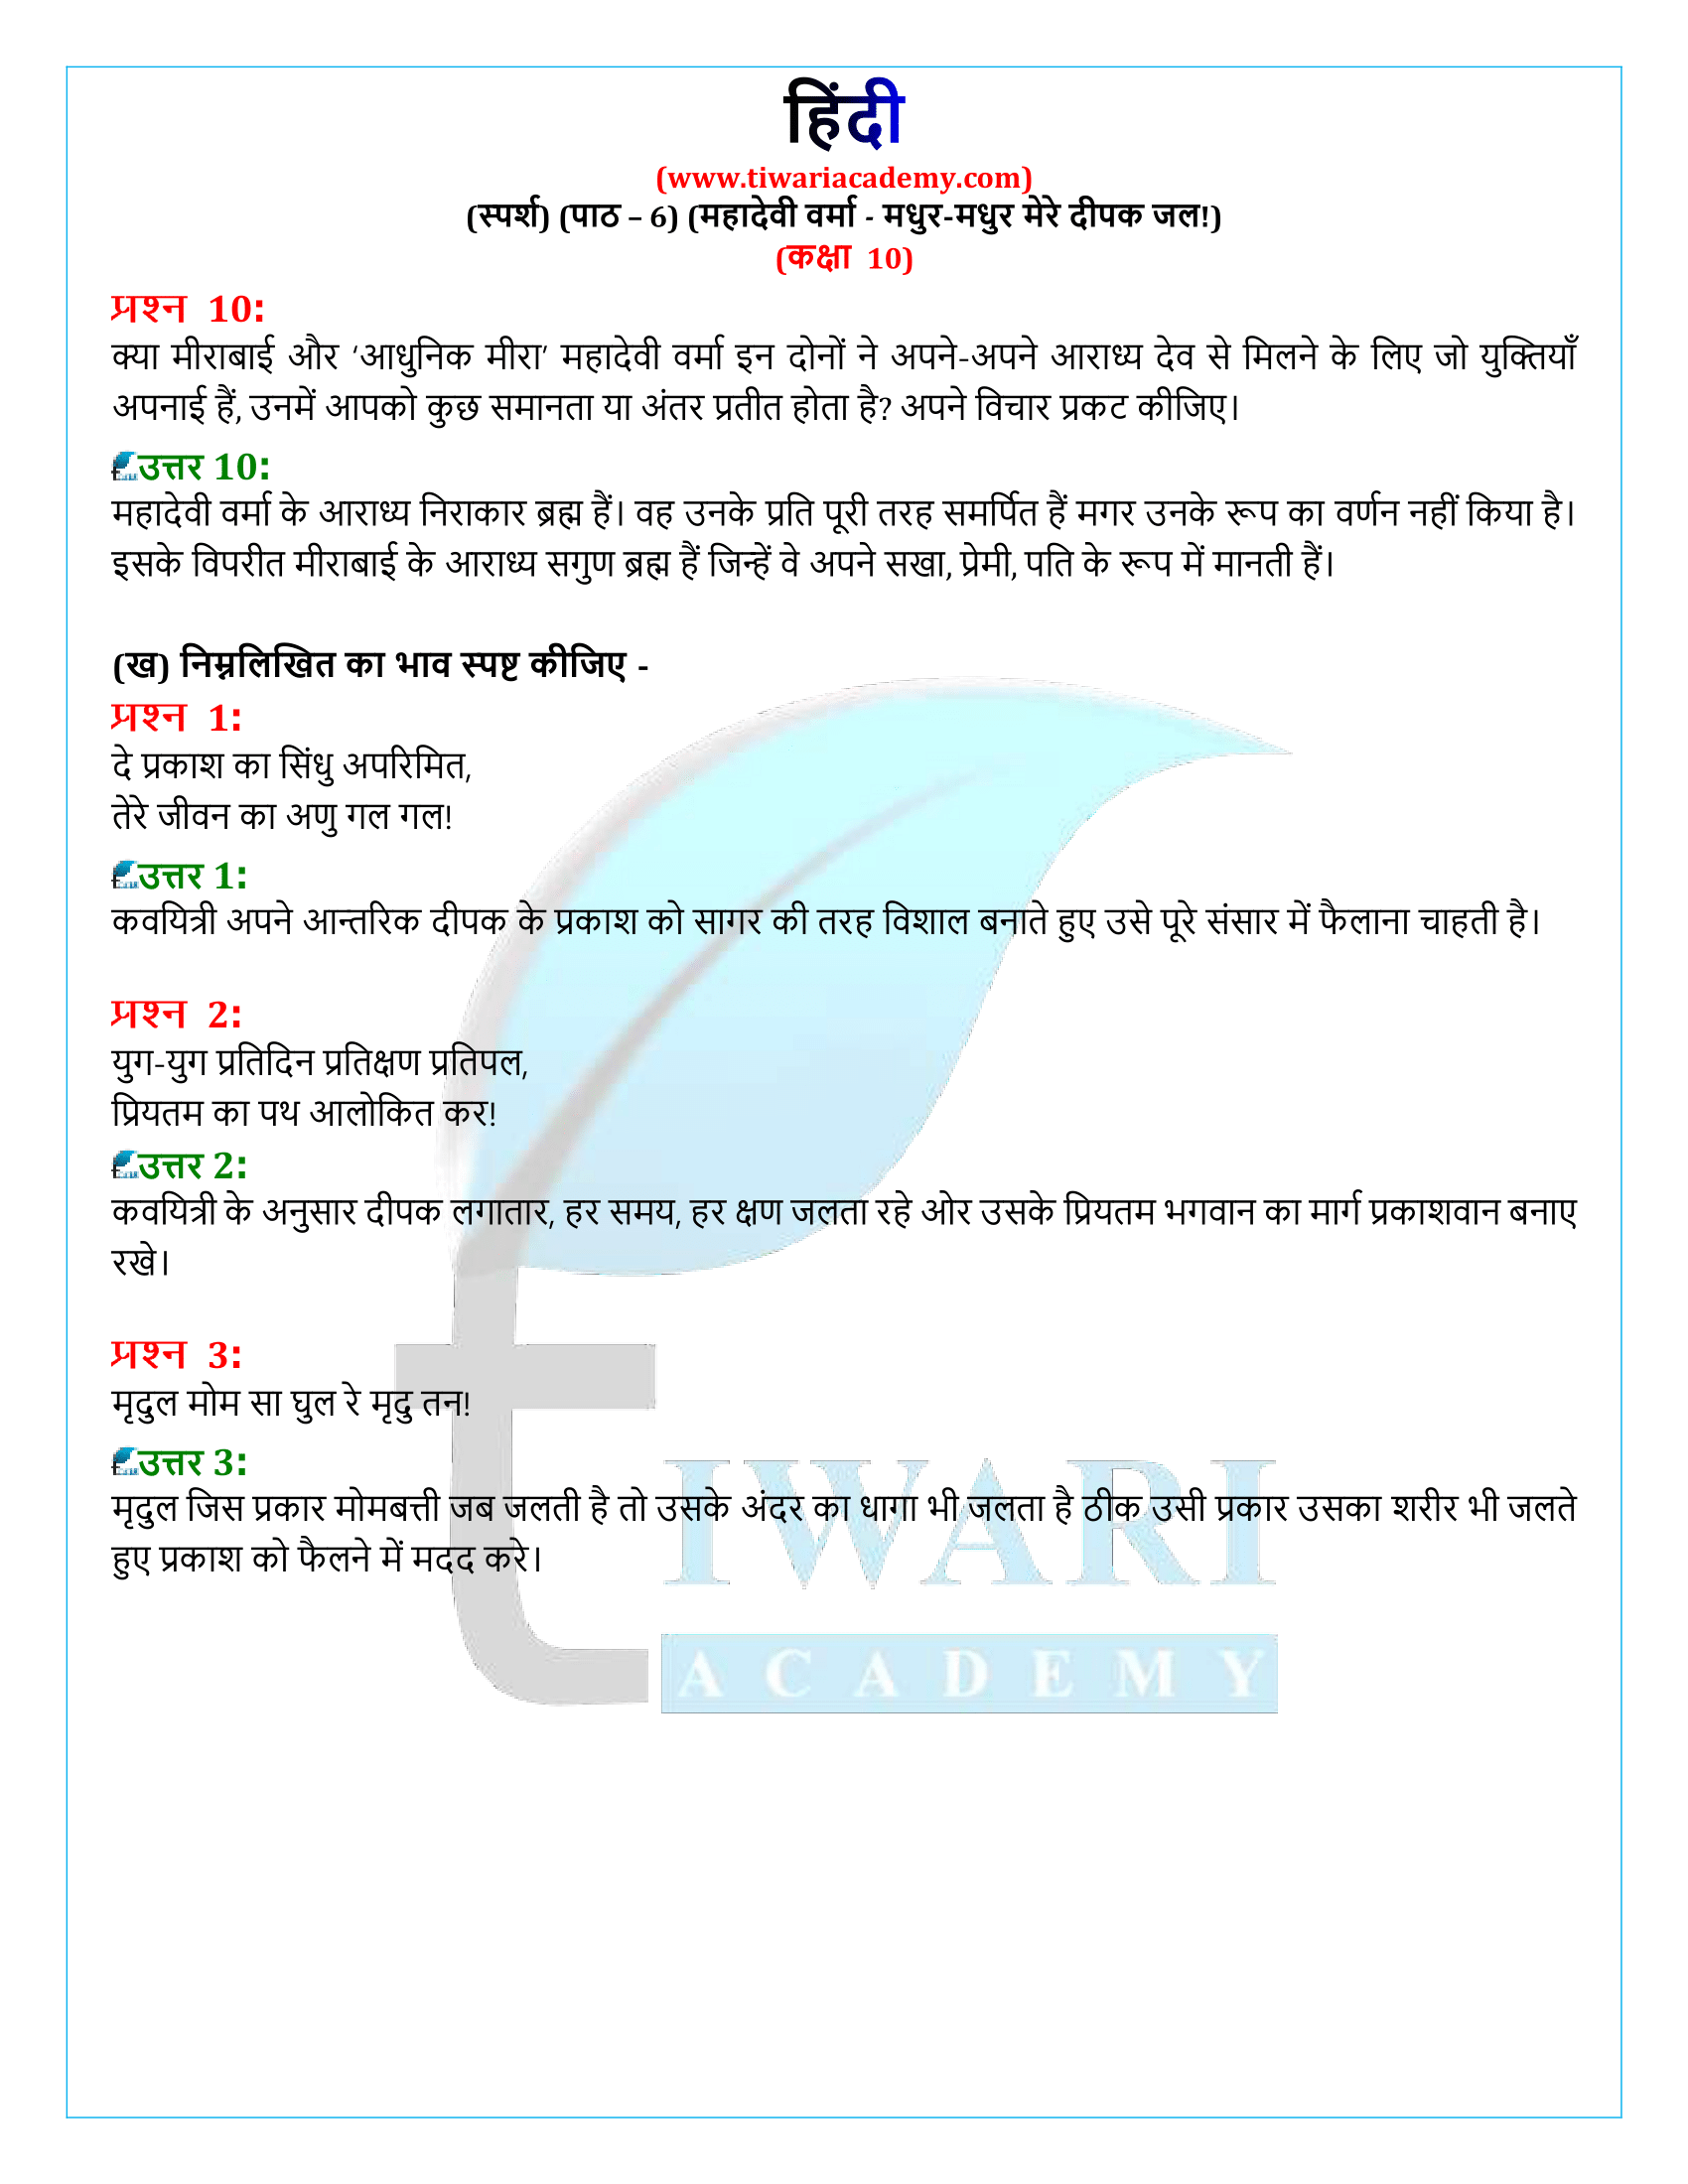 कक्षा 10 हिंदी स्पर्श अध्याय 6 की व्याख्या